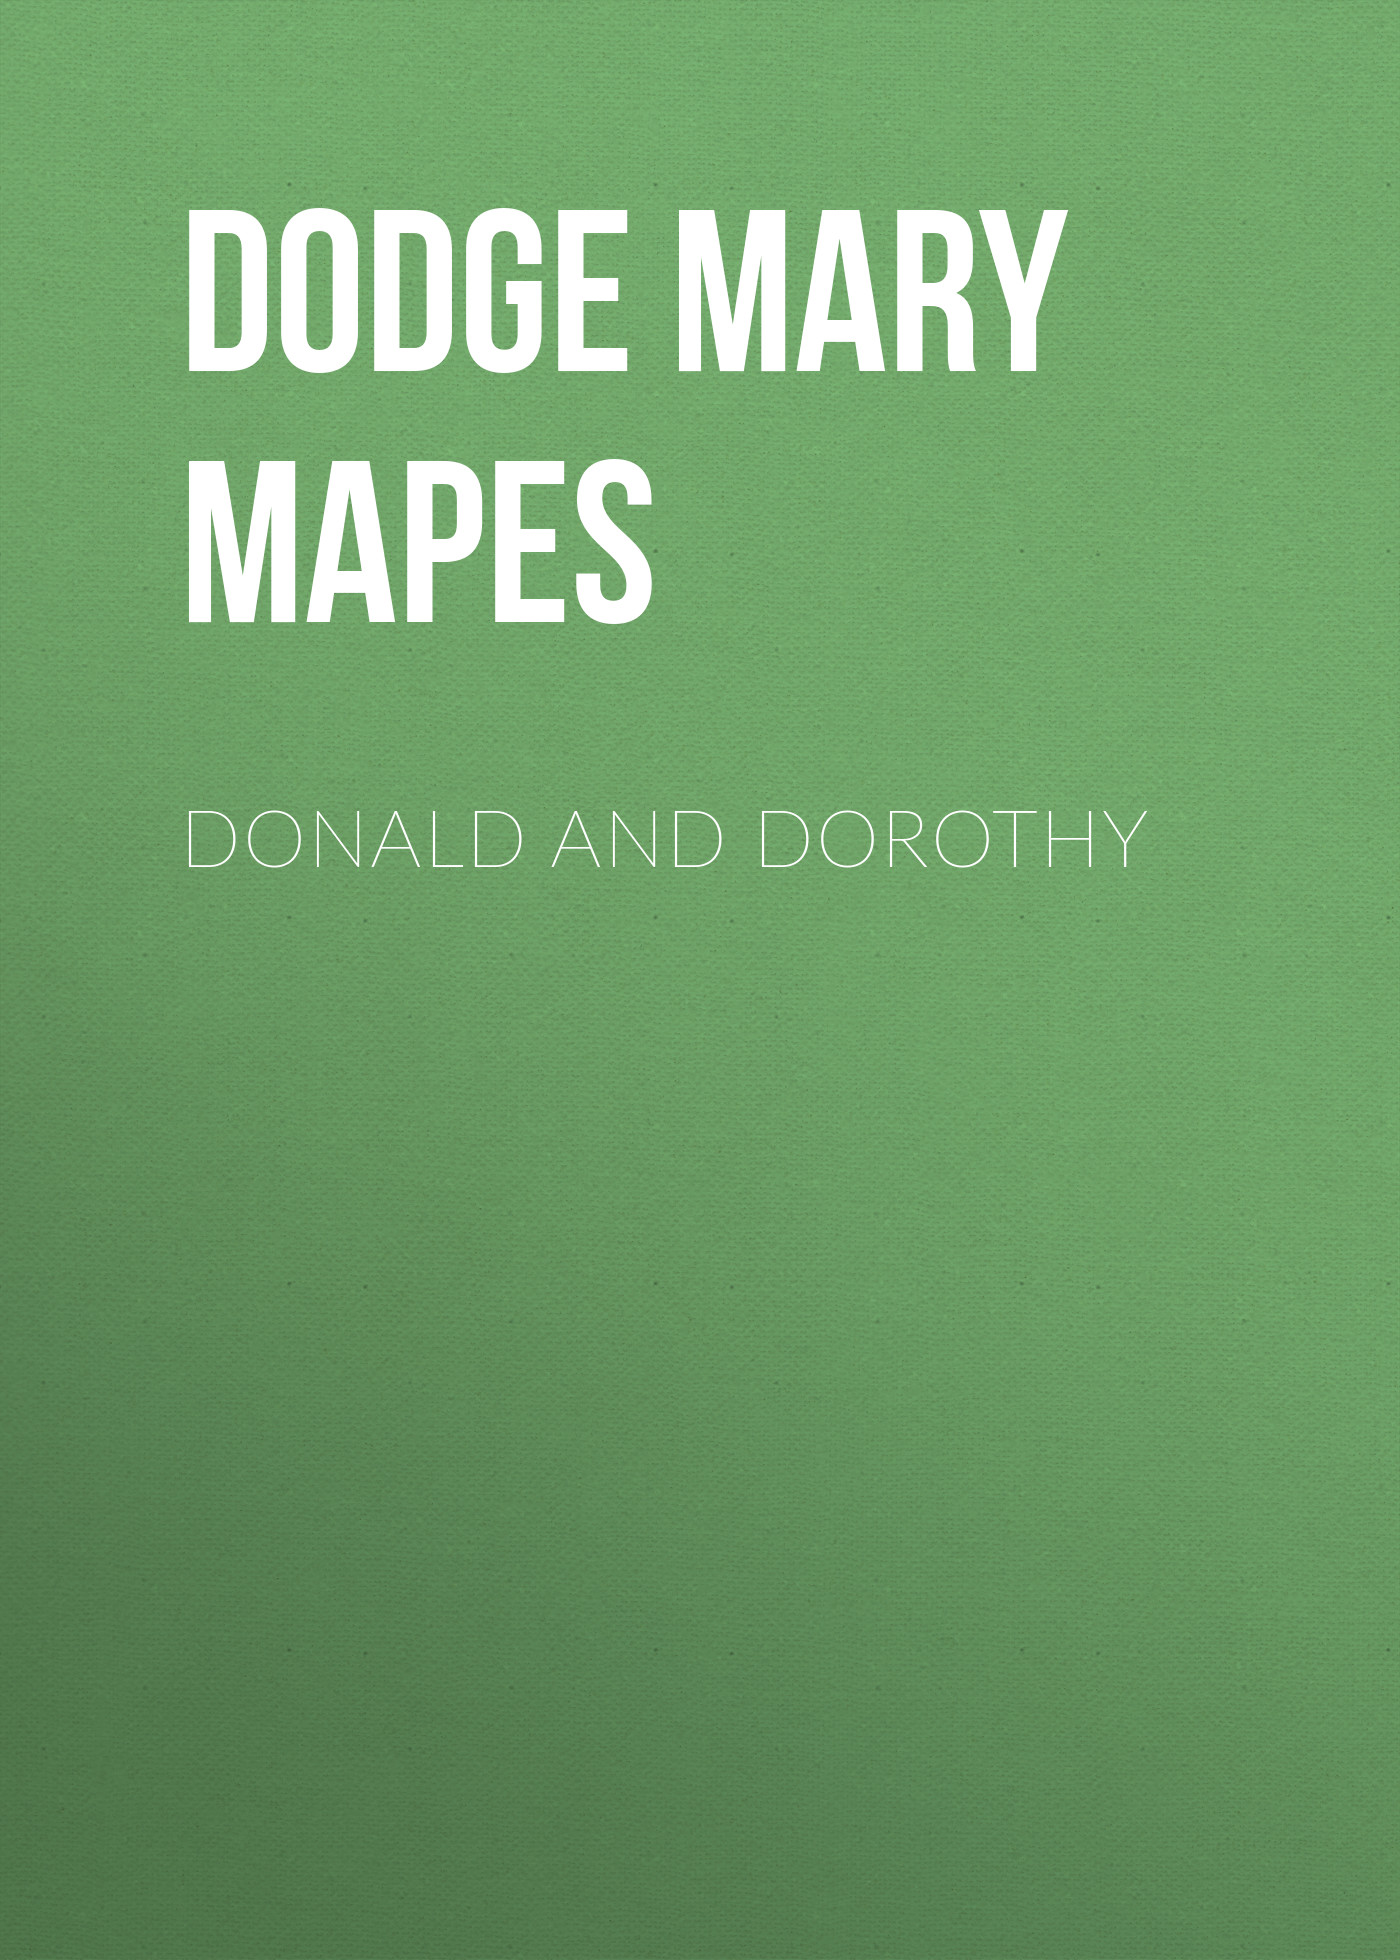 Книга Donald and Dorothy из серии , созданная Mary Dodge, может относится к жанру Зарубежная старинная литература, Зарубежная классика. Стоимость электронной книги Donald and Dorothy с идентификатором 24620661 составляет 0 руб.